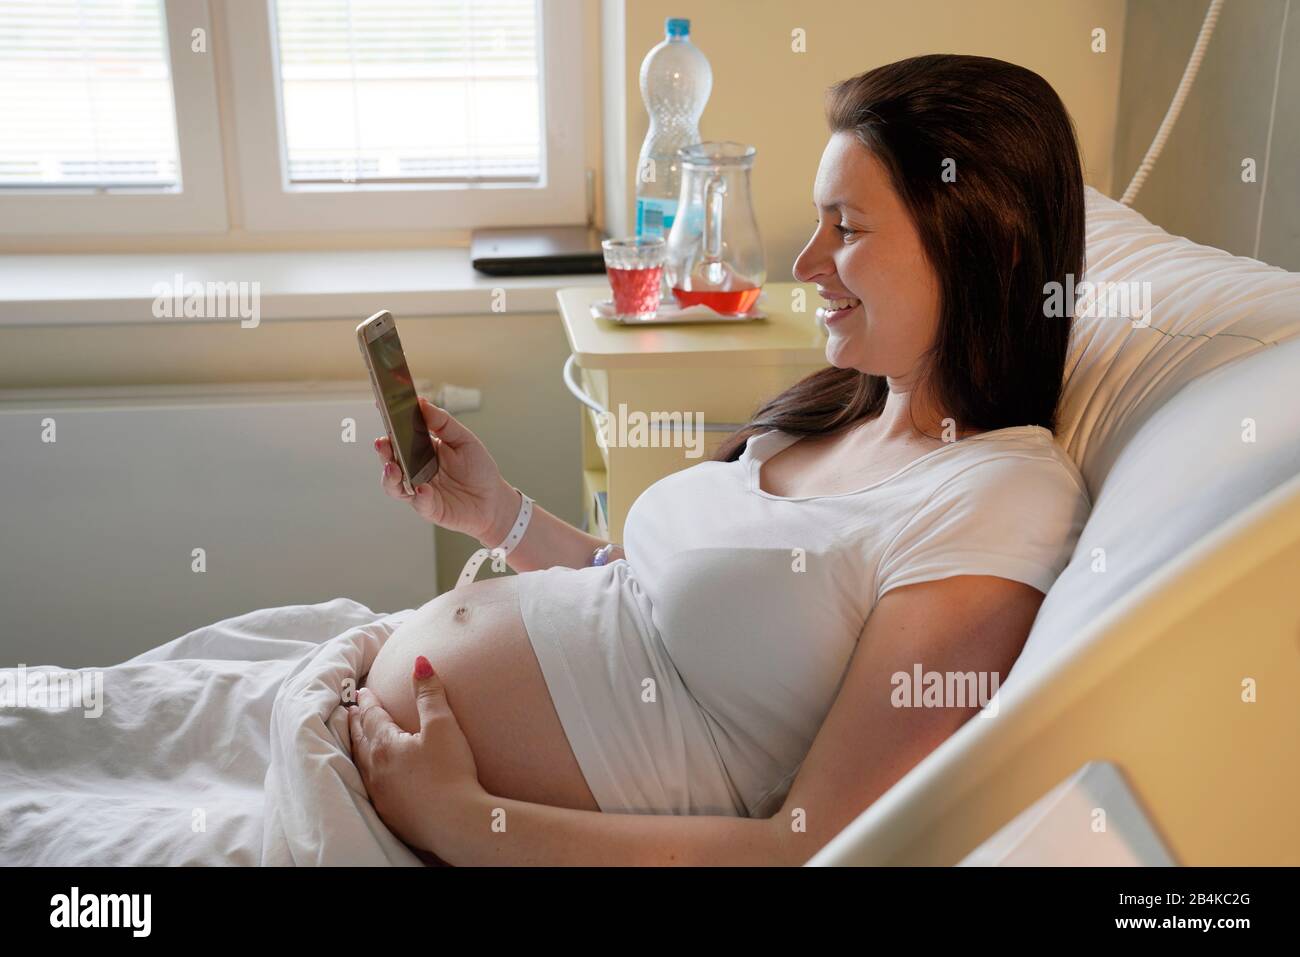 Grossesse à haut risque, femme enceinte posée à l'hôpital sur un lit de maternité et regardant sur son téléphone portable Banque D'Images